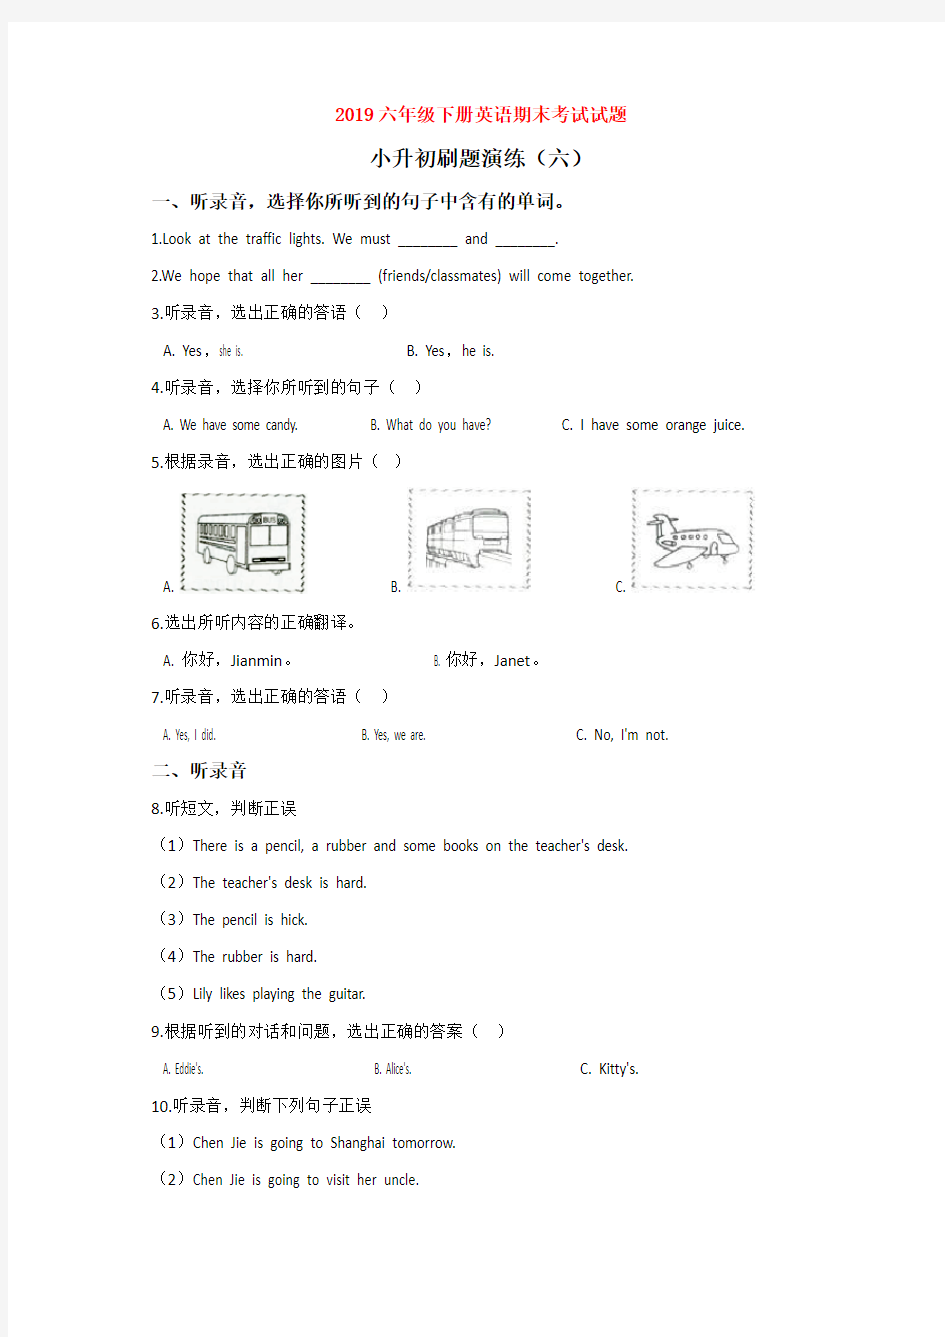 【3套试卷】上海民办协和双语学校小升初第一次模拟考试英语精选